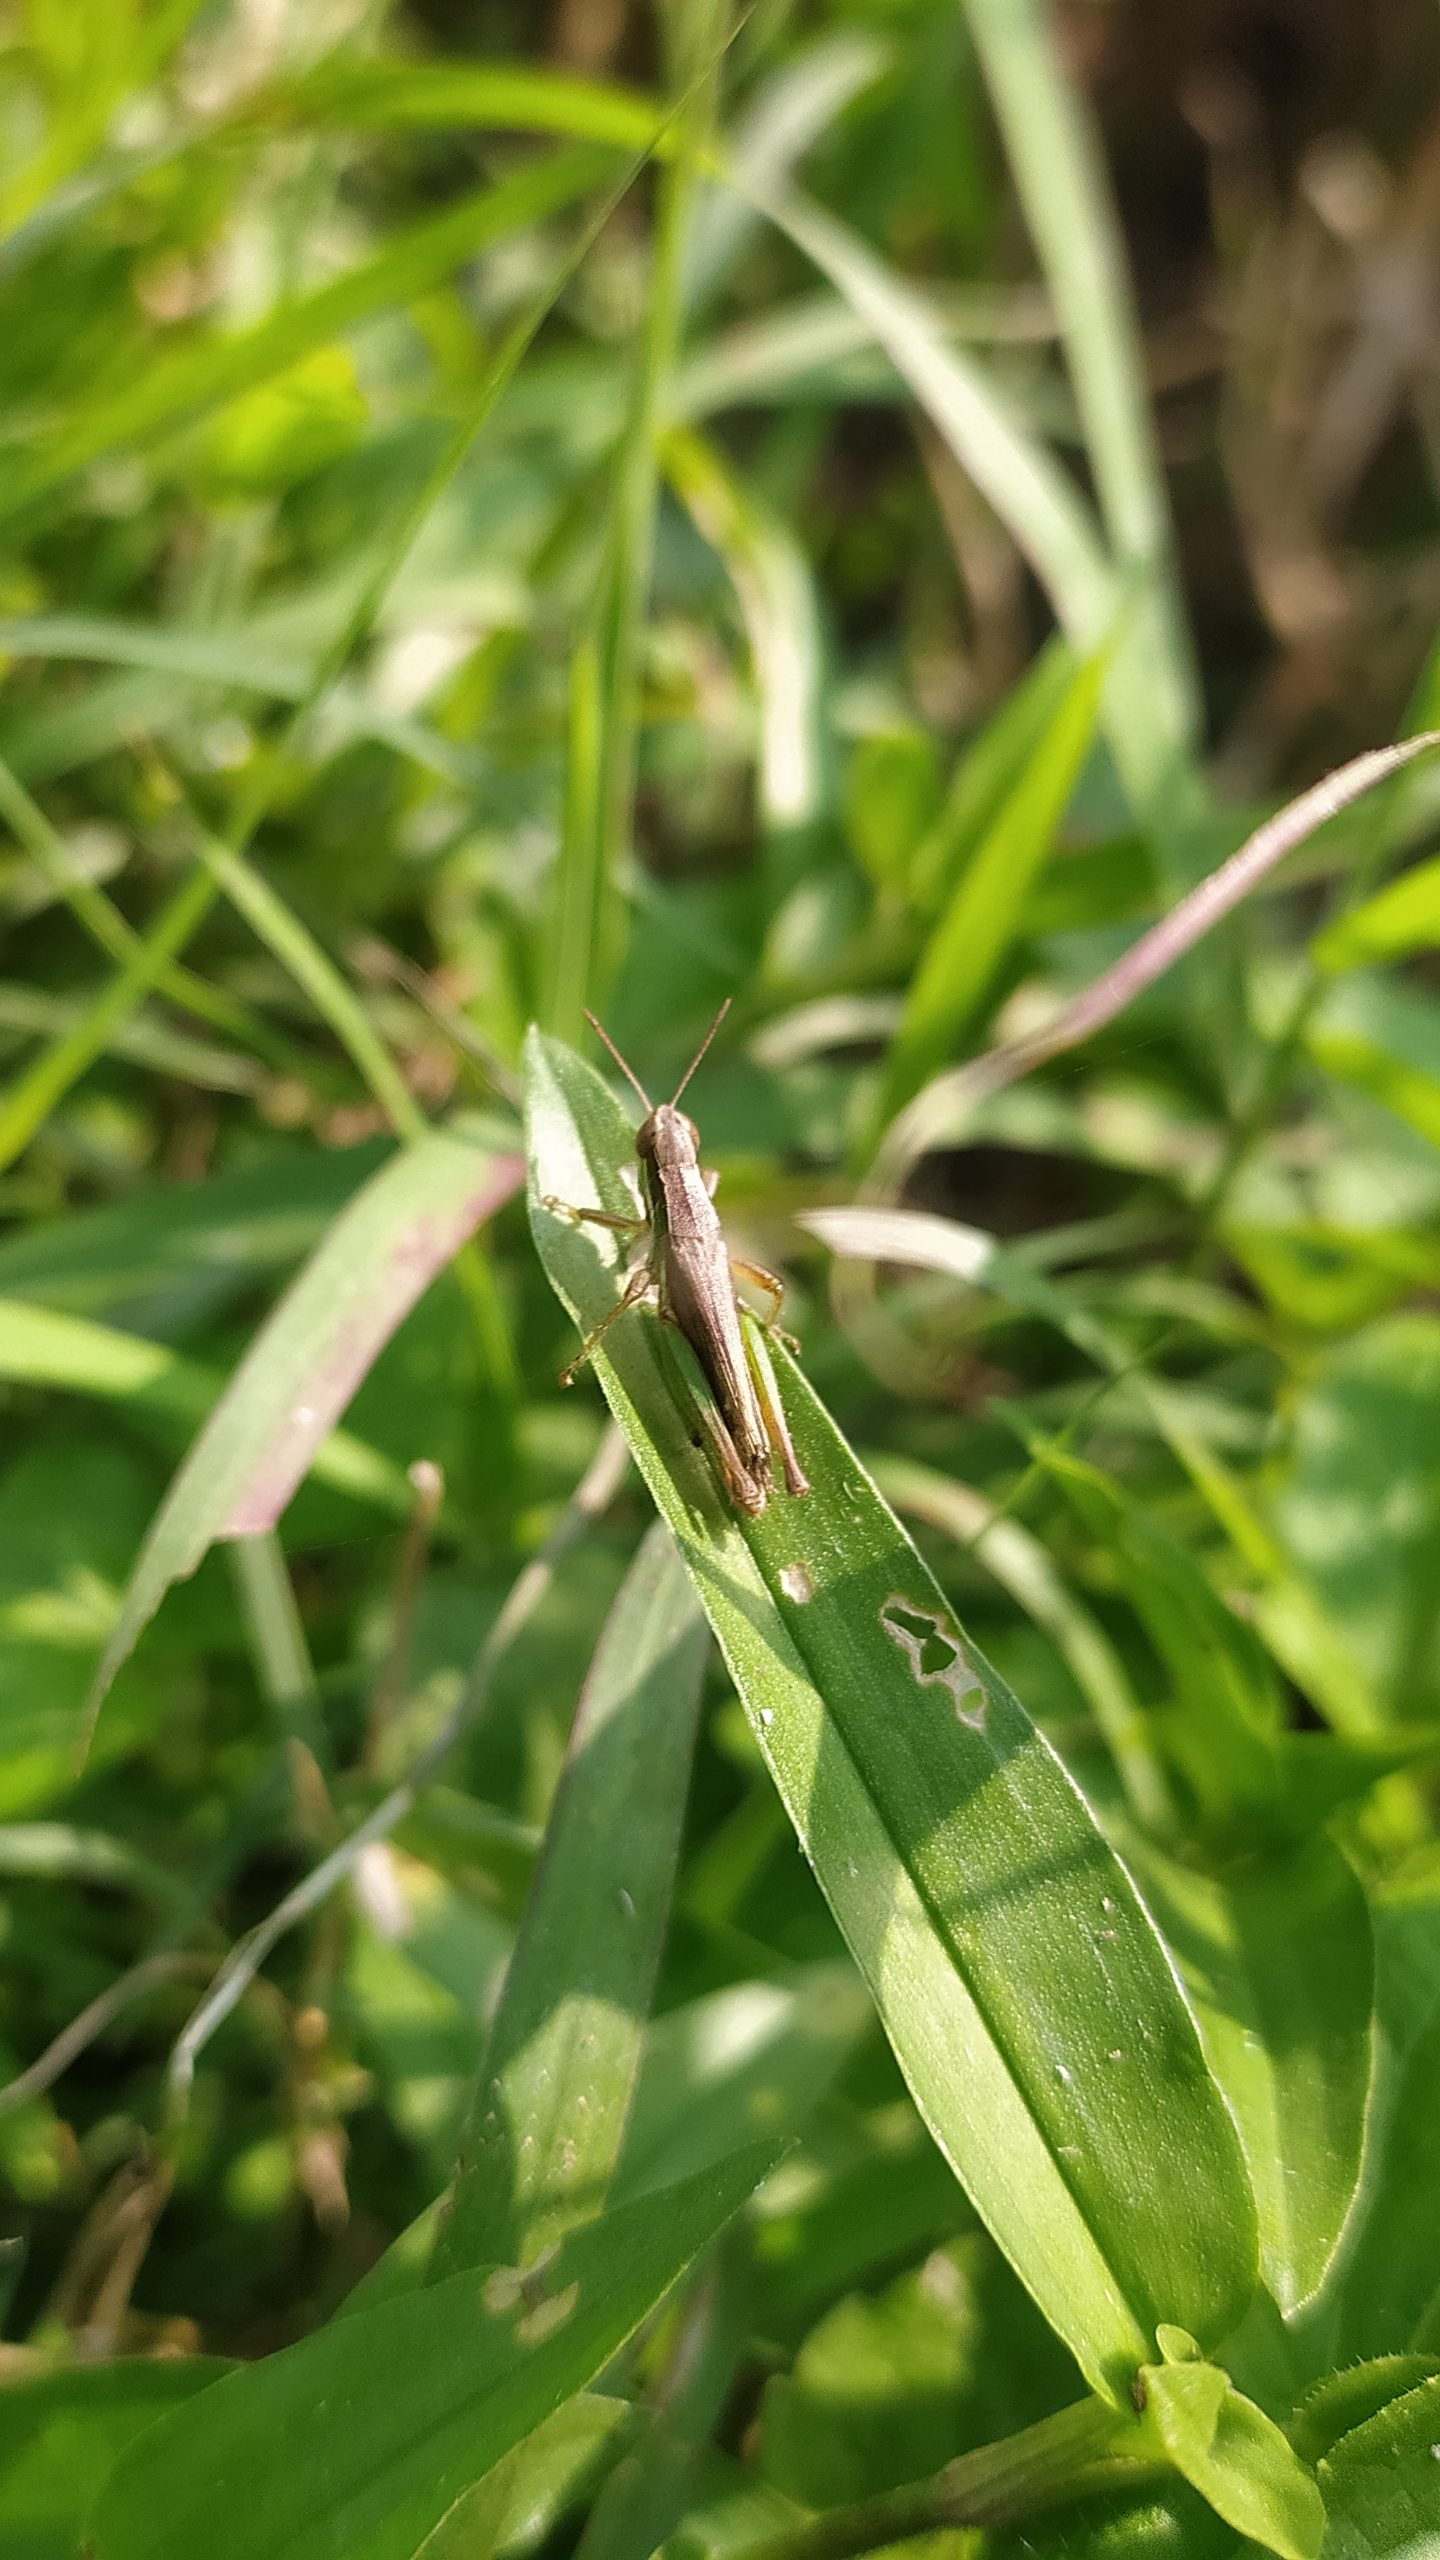 Grasshopper sitting on leaf